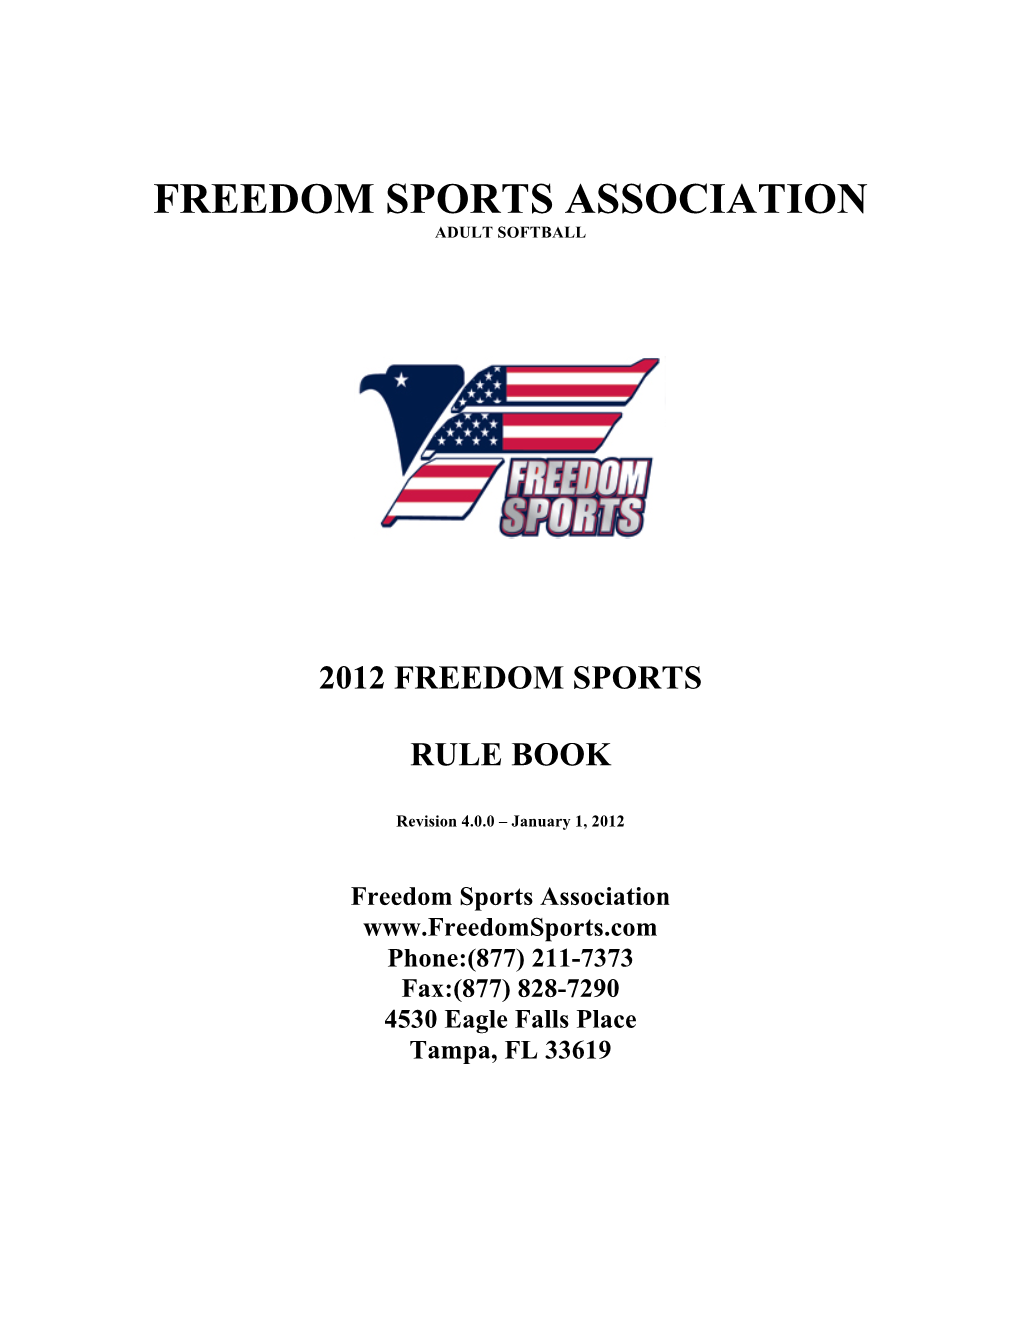 2012 Freedom Sports Rule Book